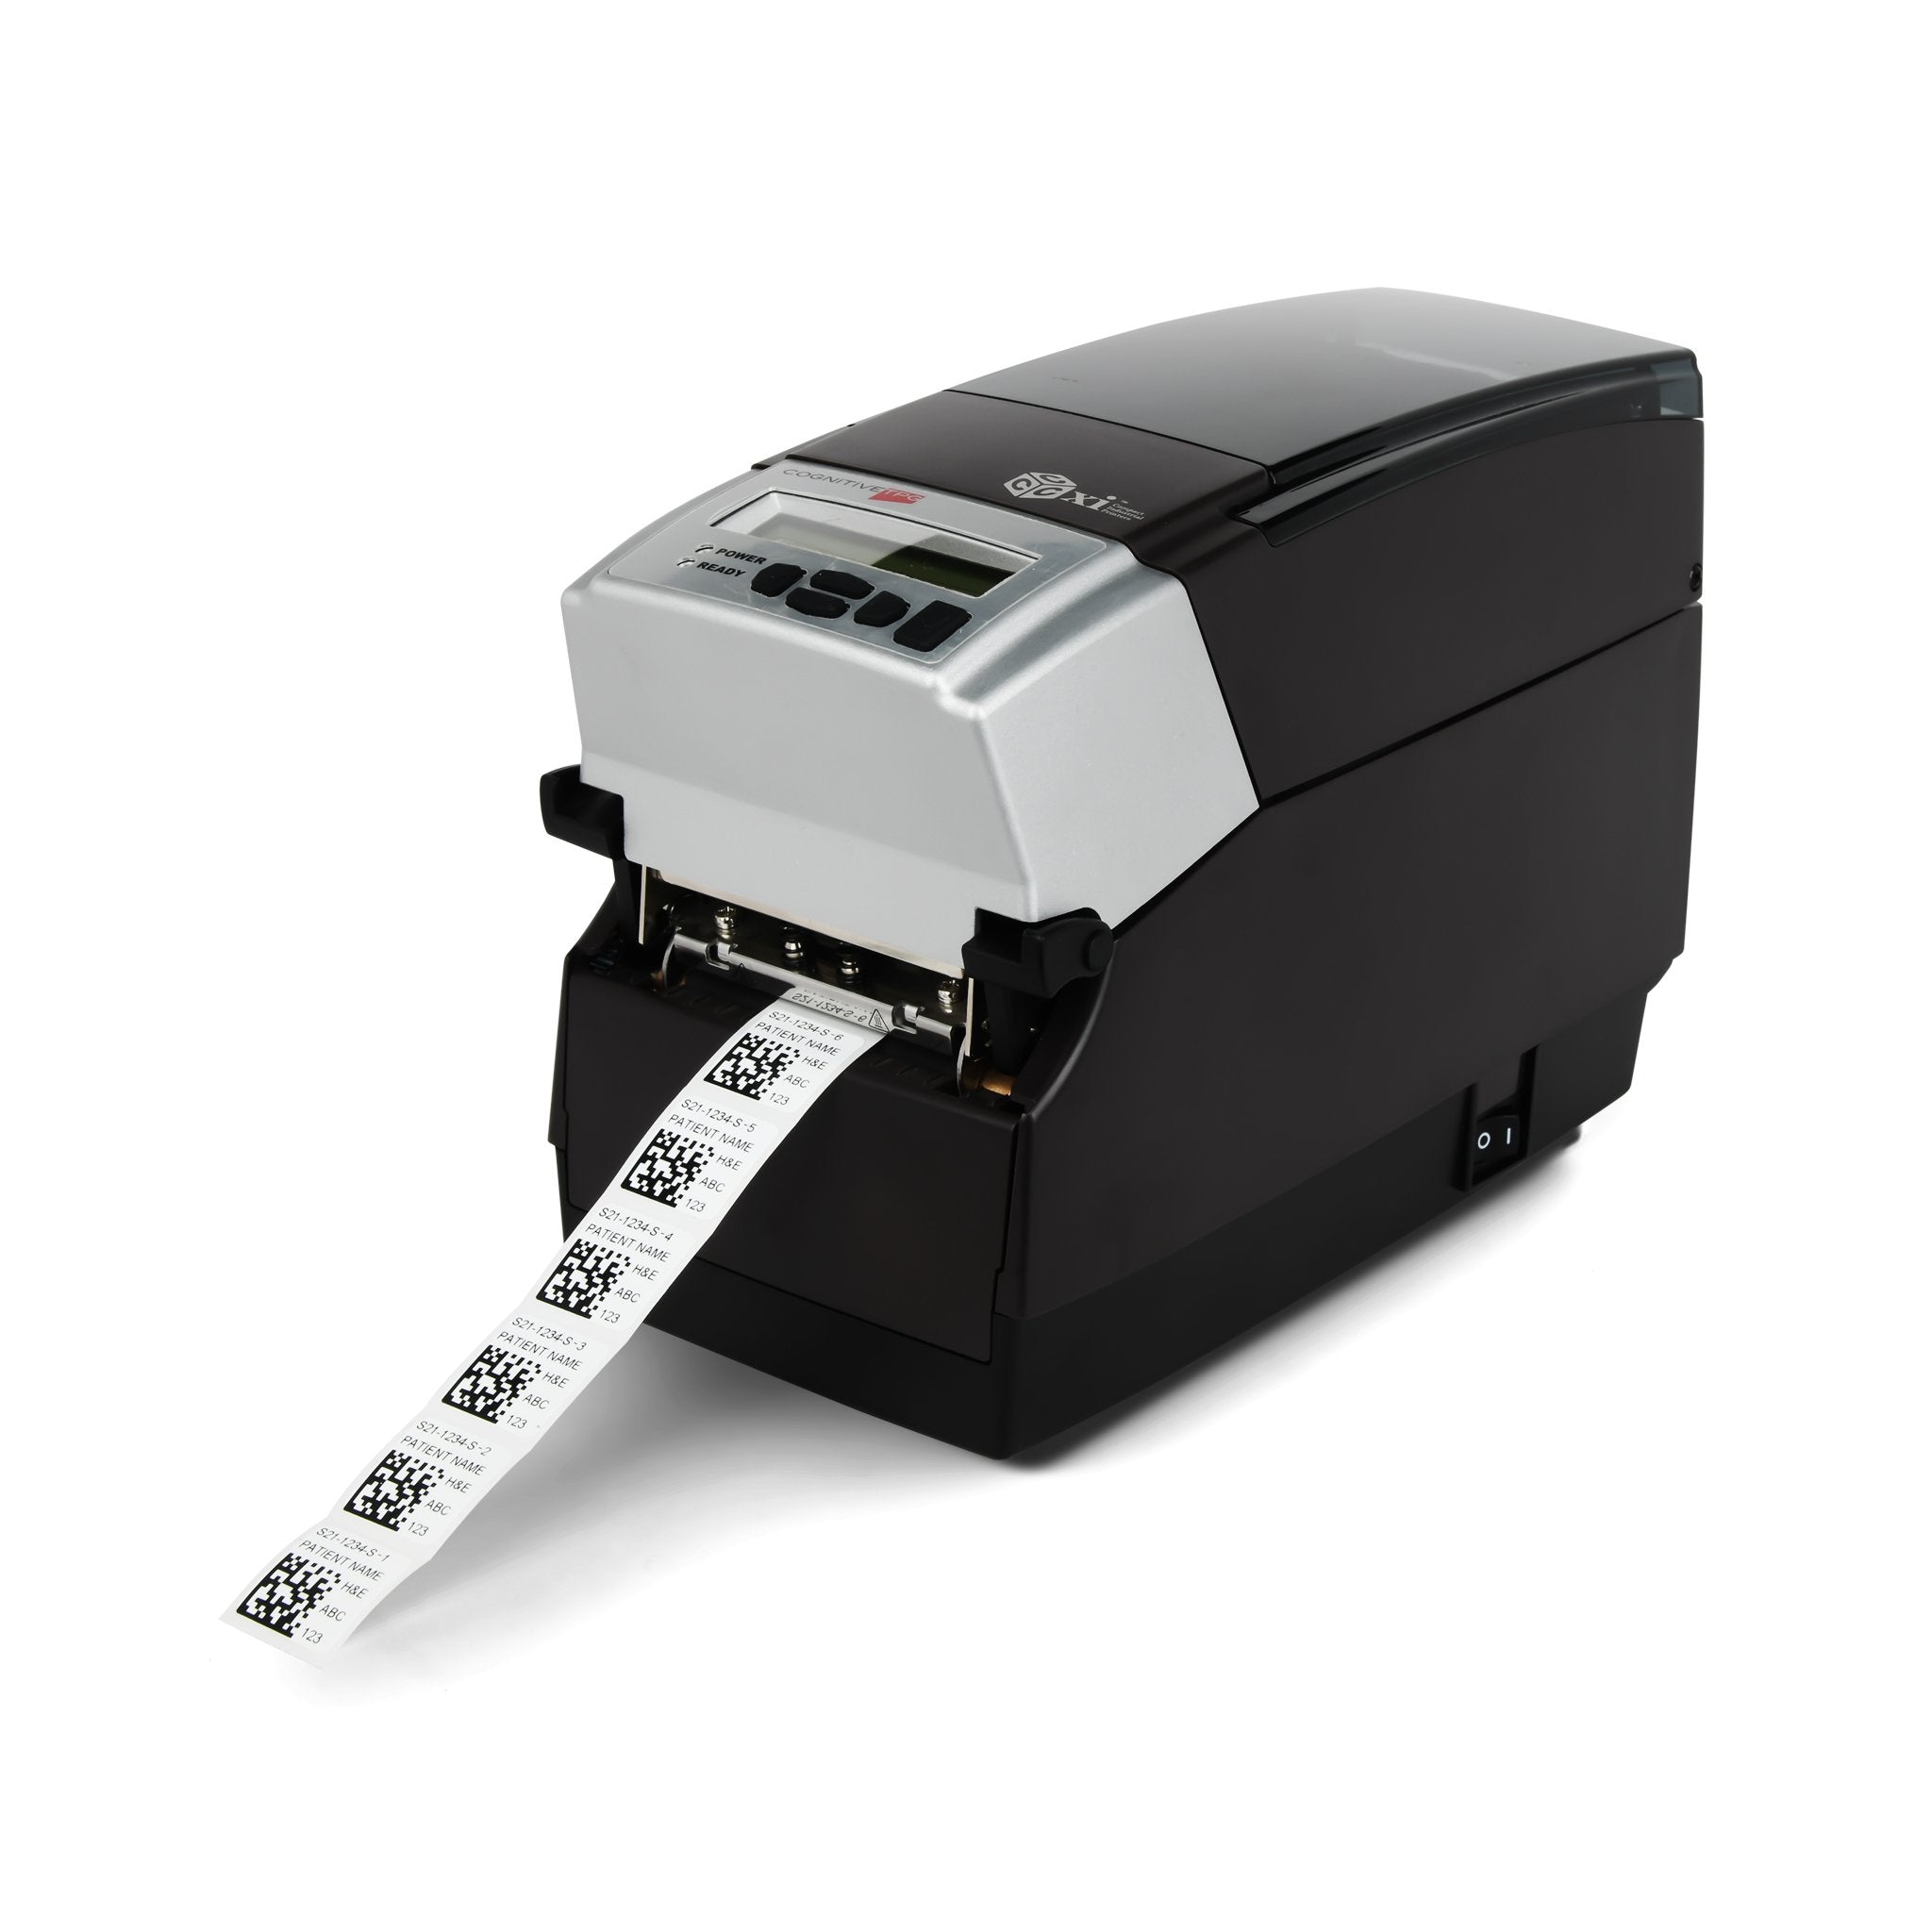 SlideID Microscope Slide Labels for printers